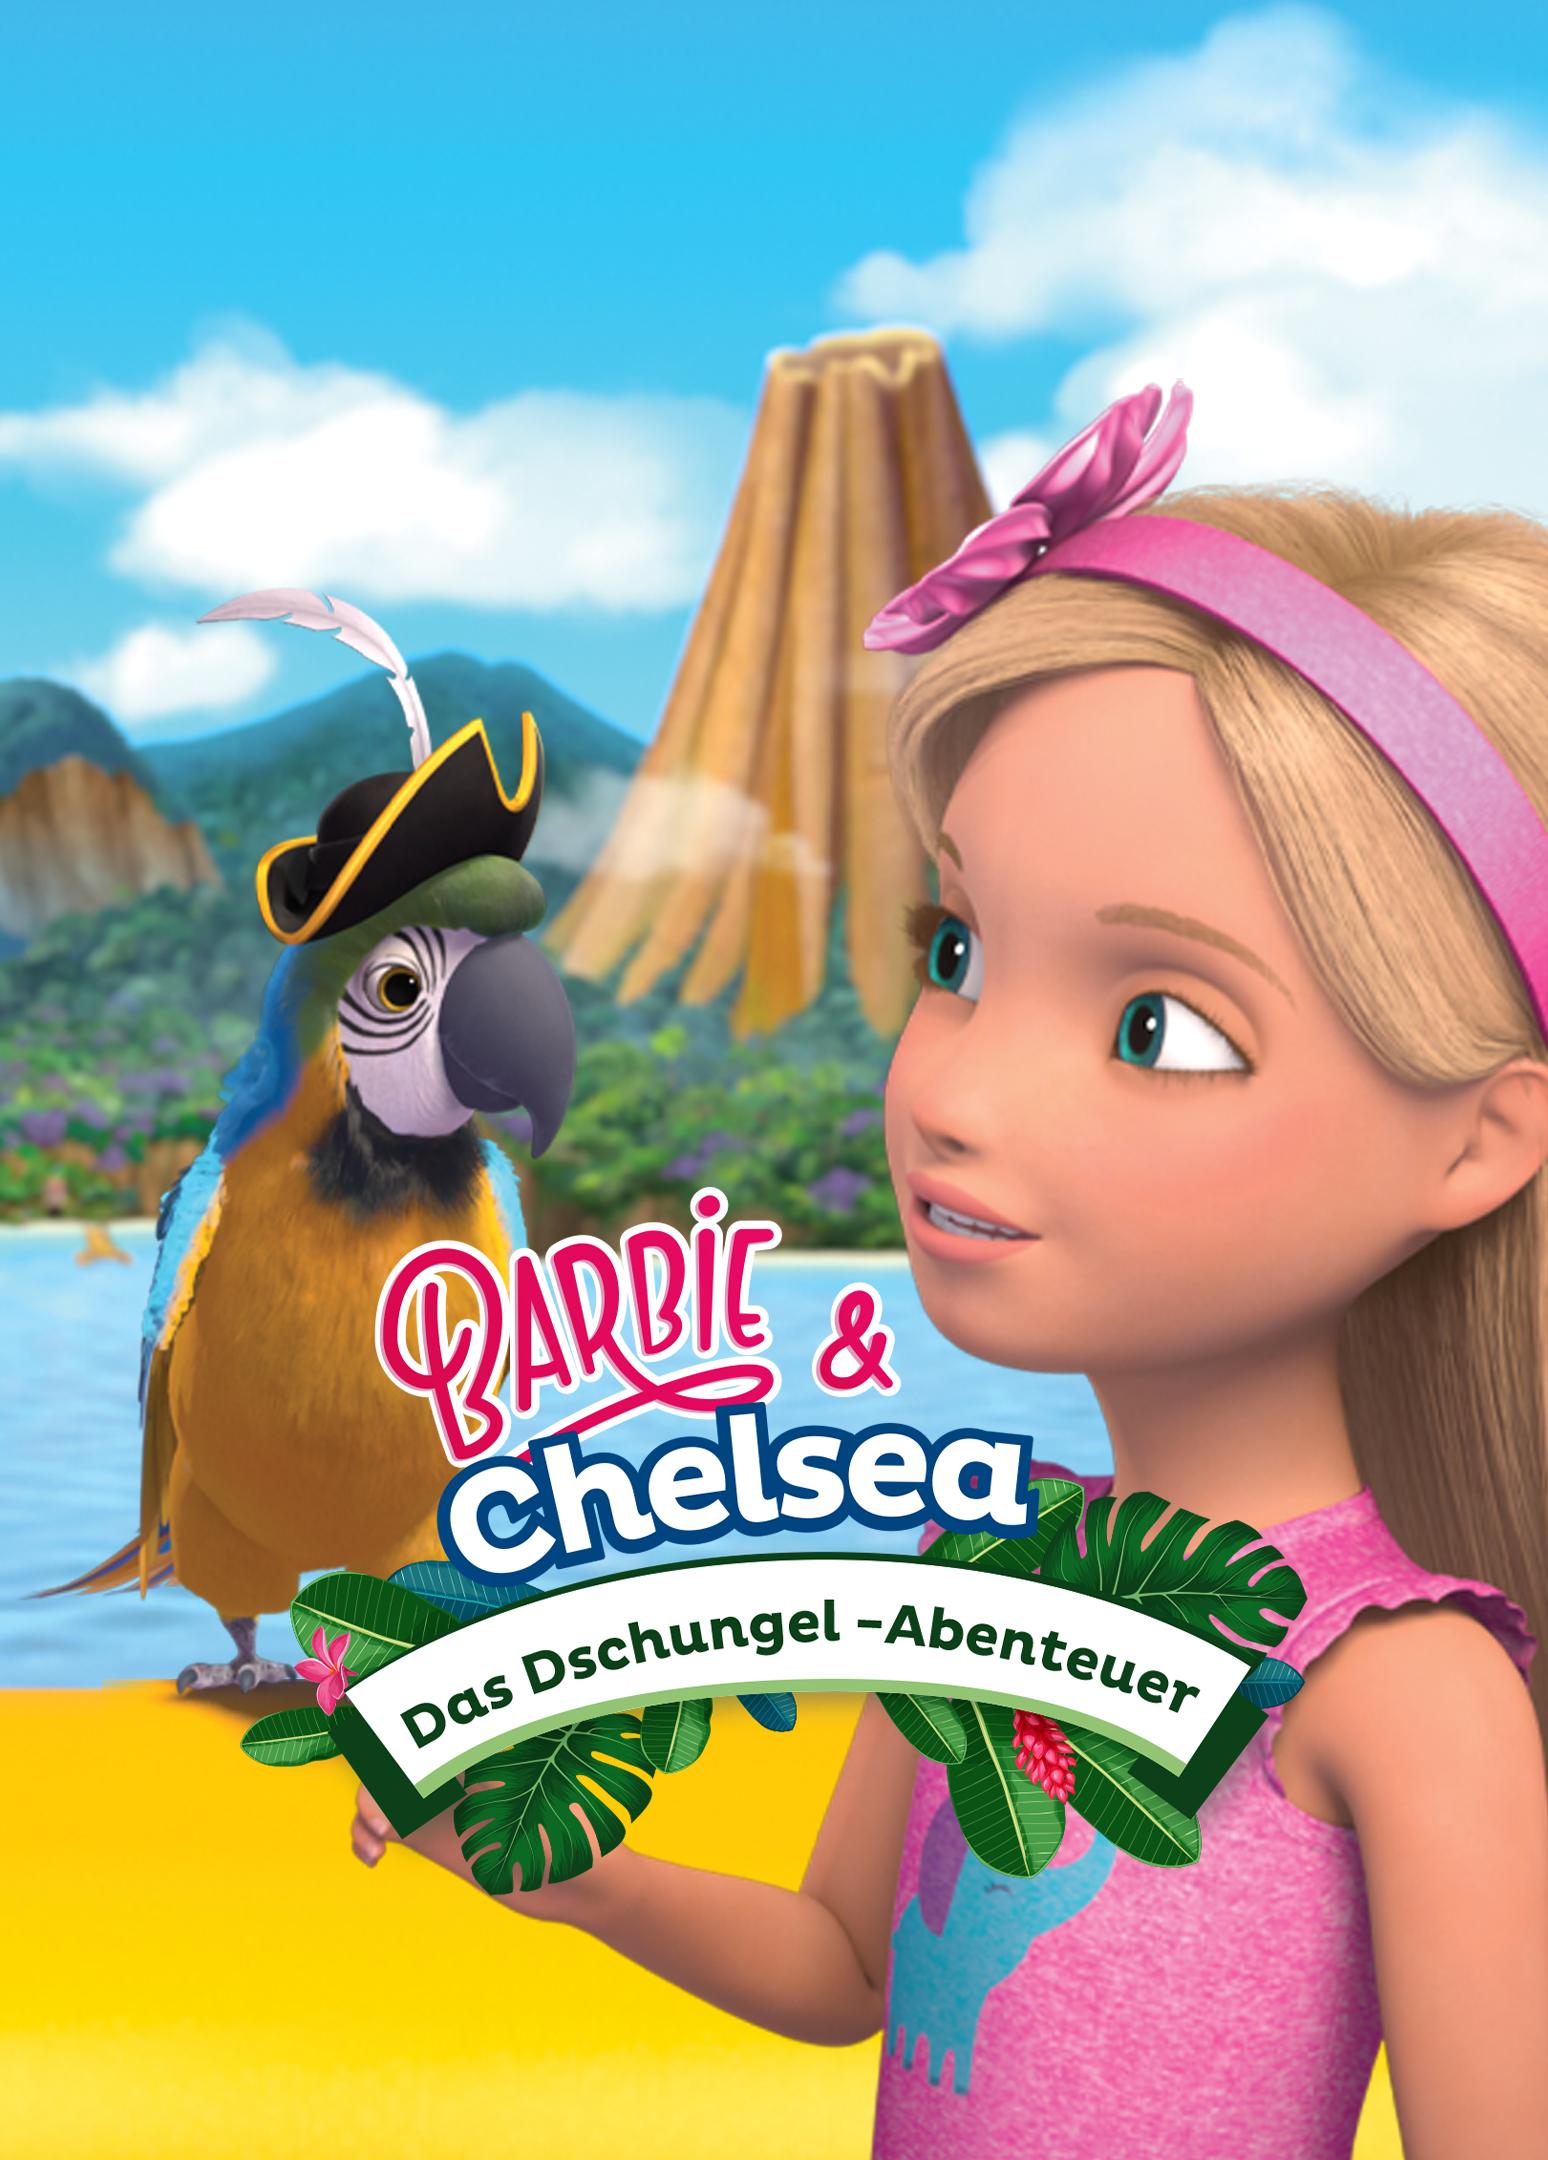 Barbie & Chelsea: Das Dschungel-Abenteuer